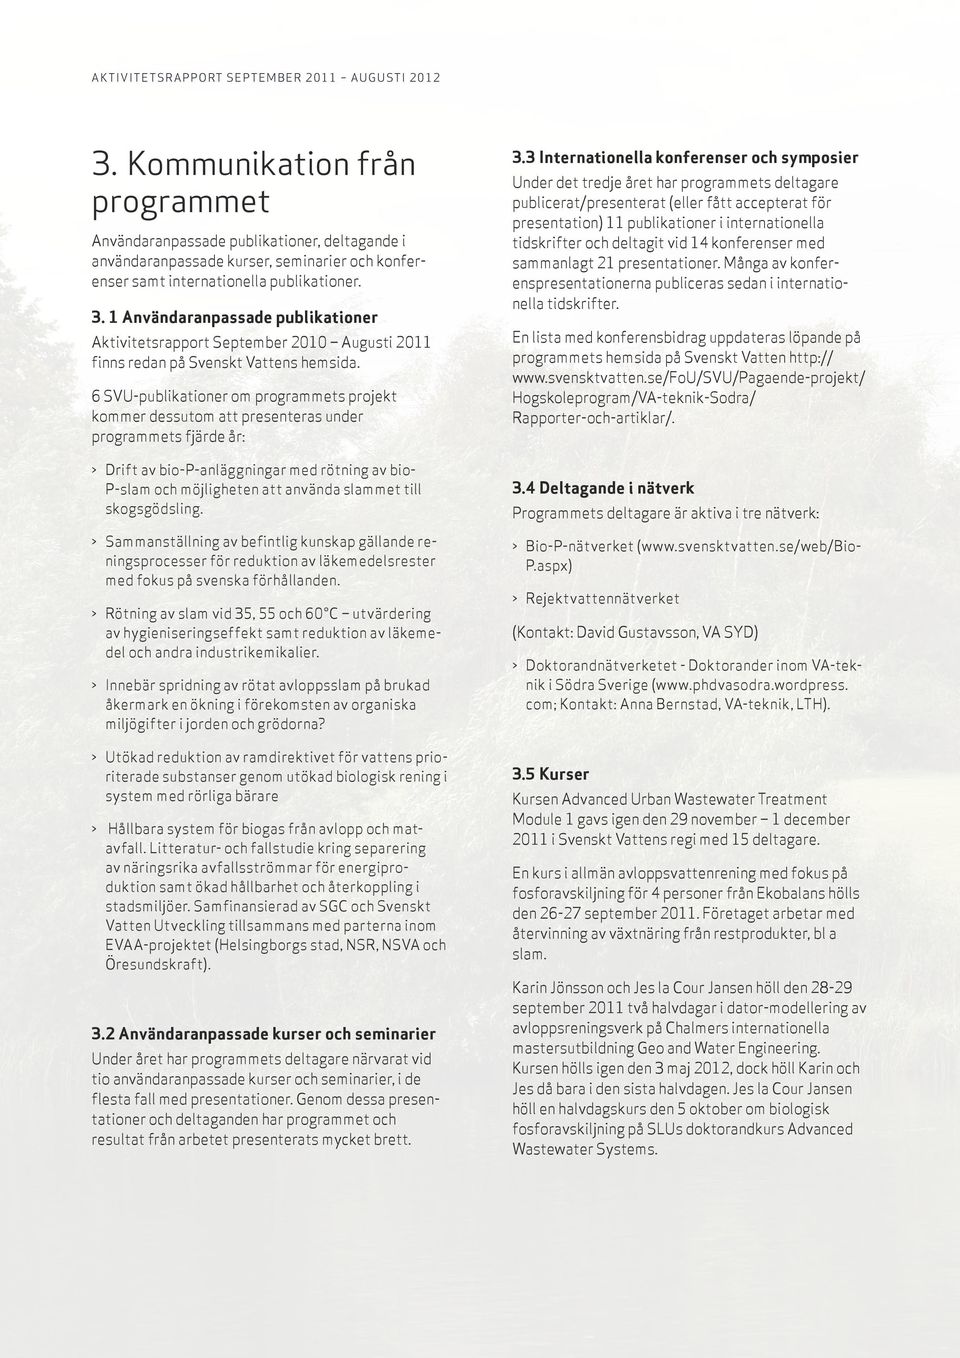 1 Användaranpassade publikationer Aktivitetsrapport September 2010 Augusti 2011 finns redan på Svenskt Vattens hemsida.